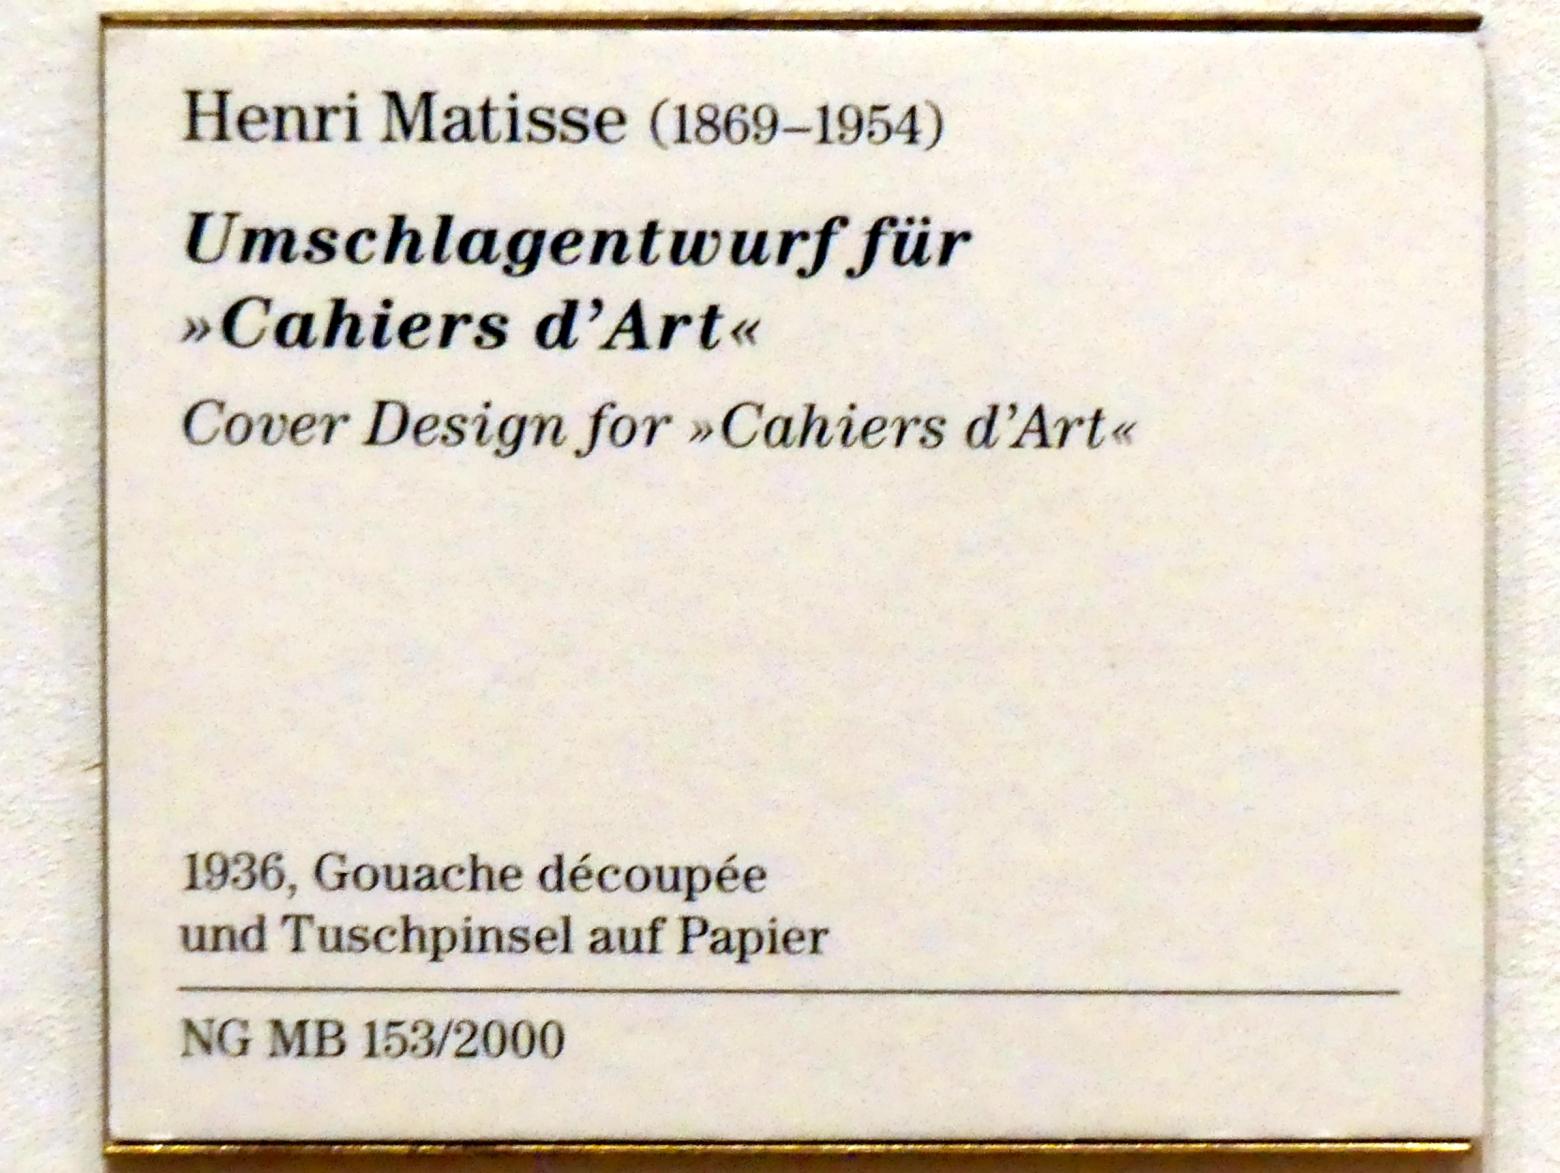 Henri Matisse (1898–1953), Umschlagentwurf für "Cahiers d'Art", Berlin, Museum Berggruen, Kommandantenhaus, Erdgeschoss, Saal 4, 1936, Bild 2/2